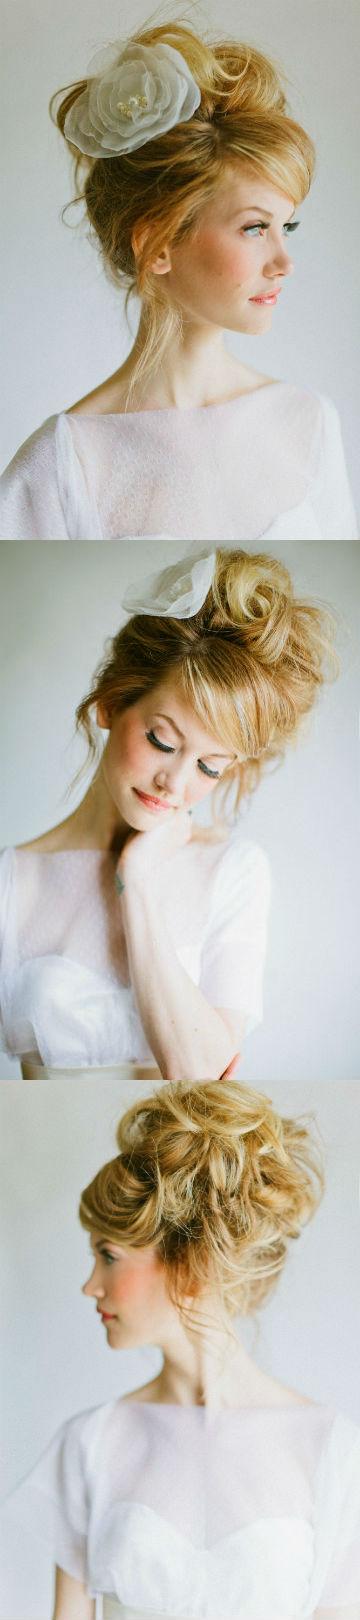 Свадьба - Романтический стиль волос невесты с большой розой accesorizes